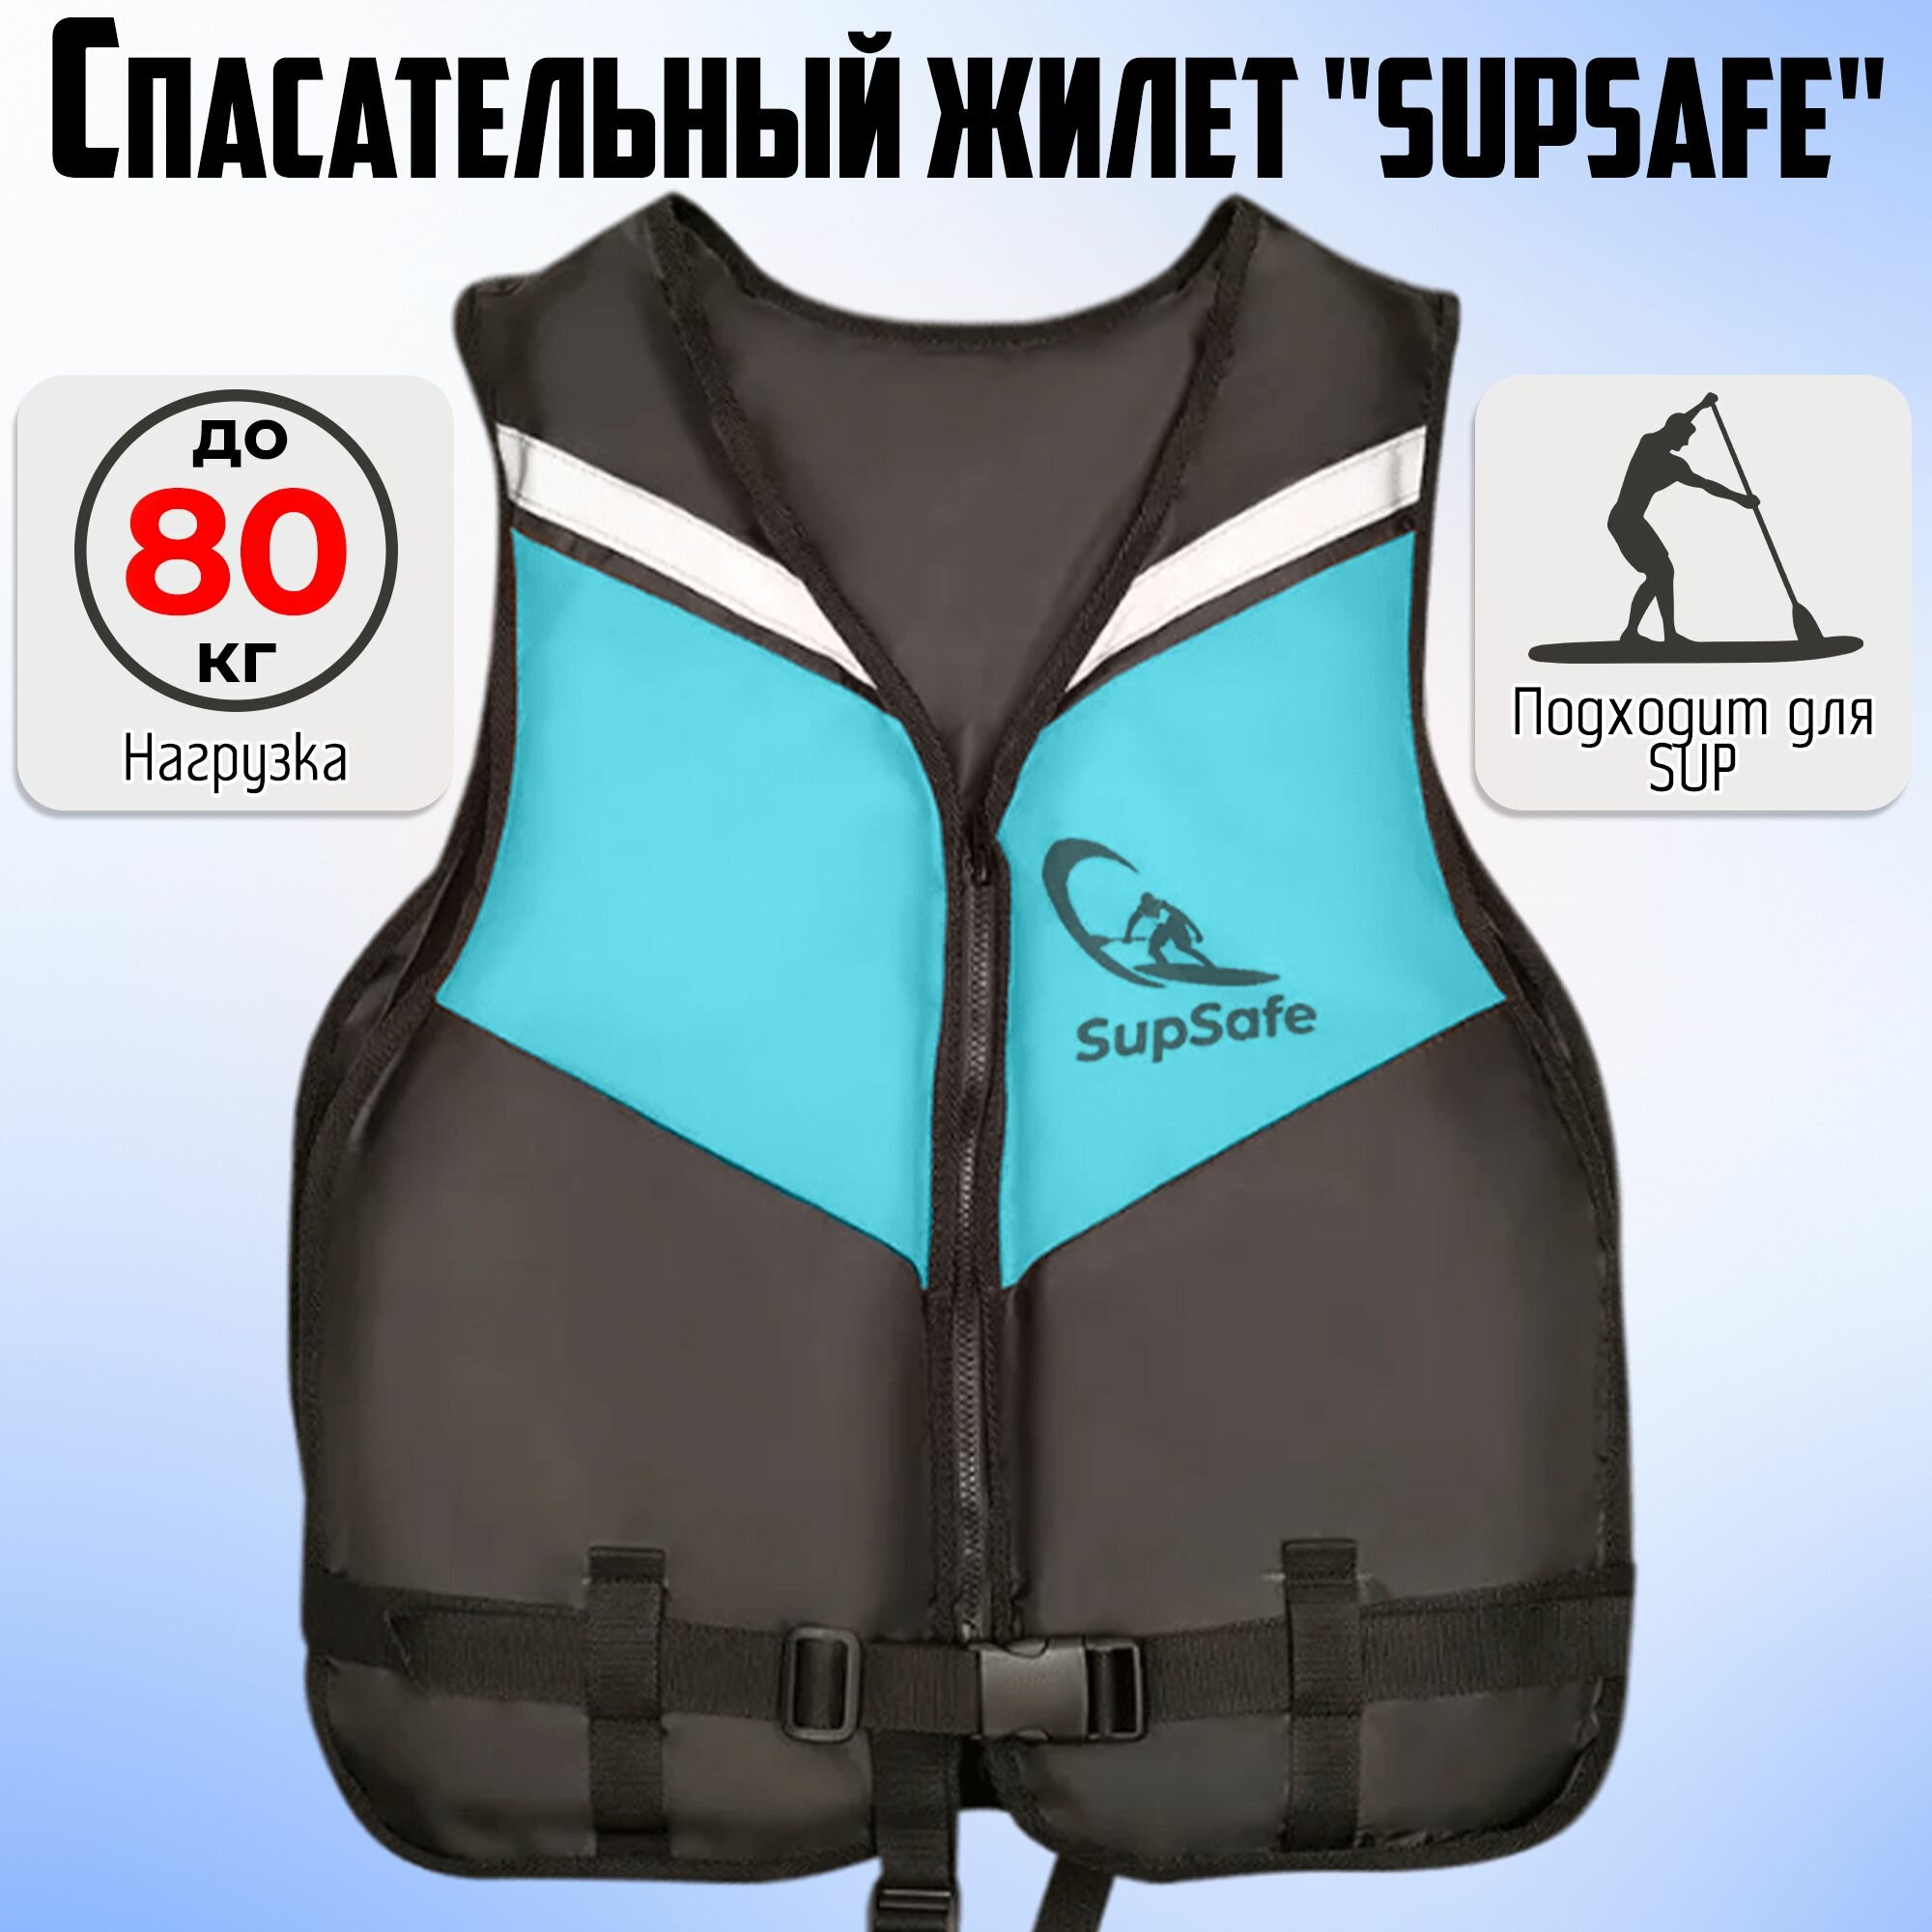 Спасательный жилет SupSafe до 80 кг, 46-48 черный; бирюзовый